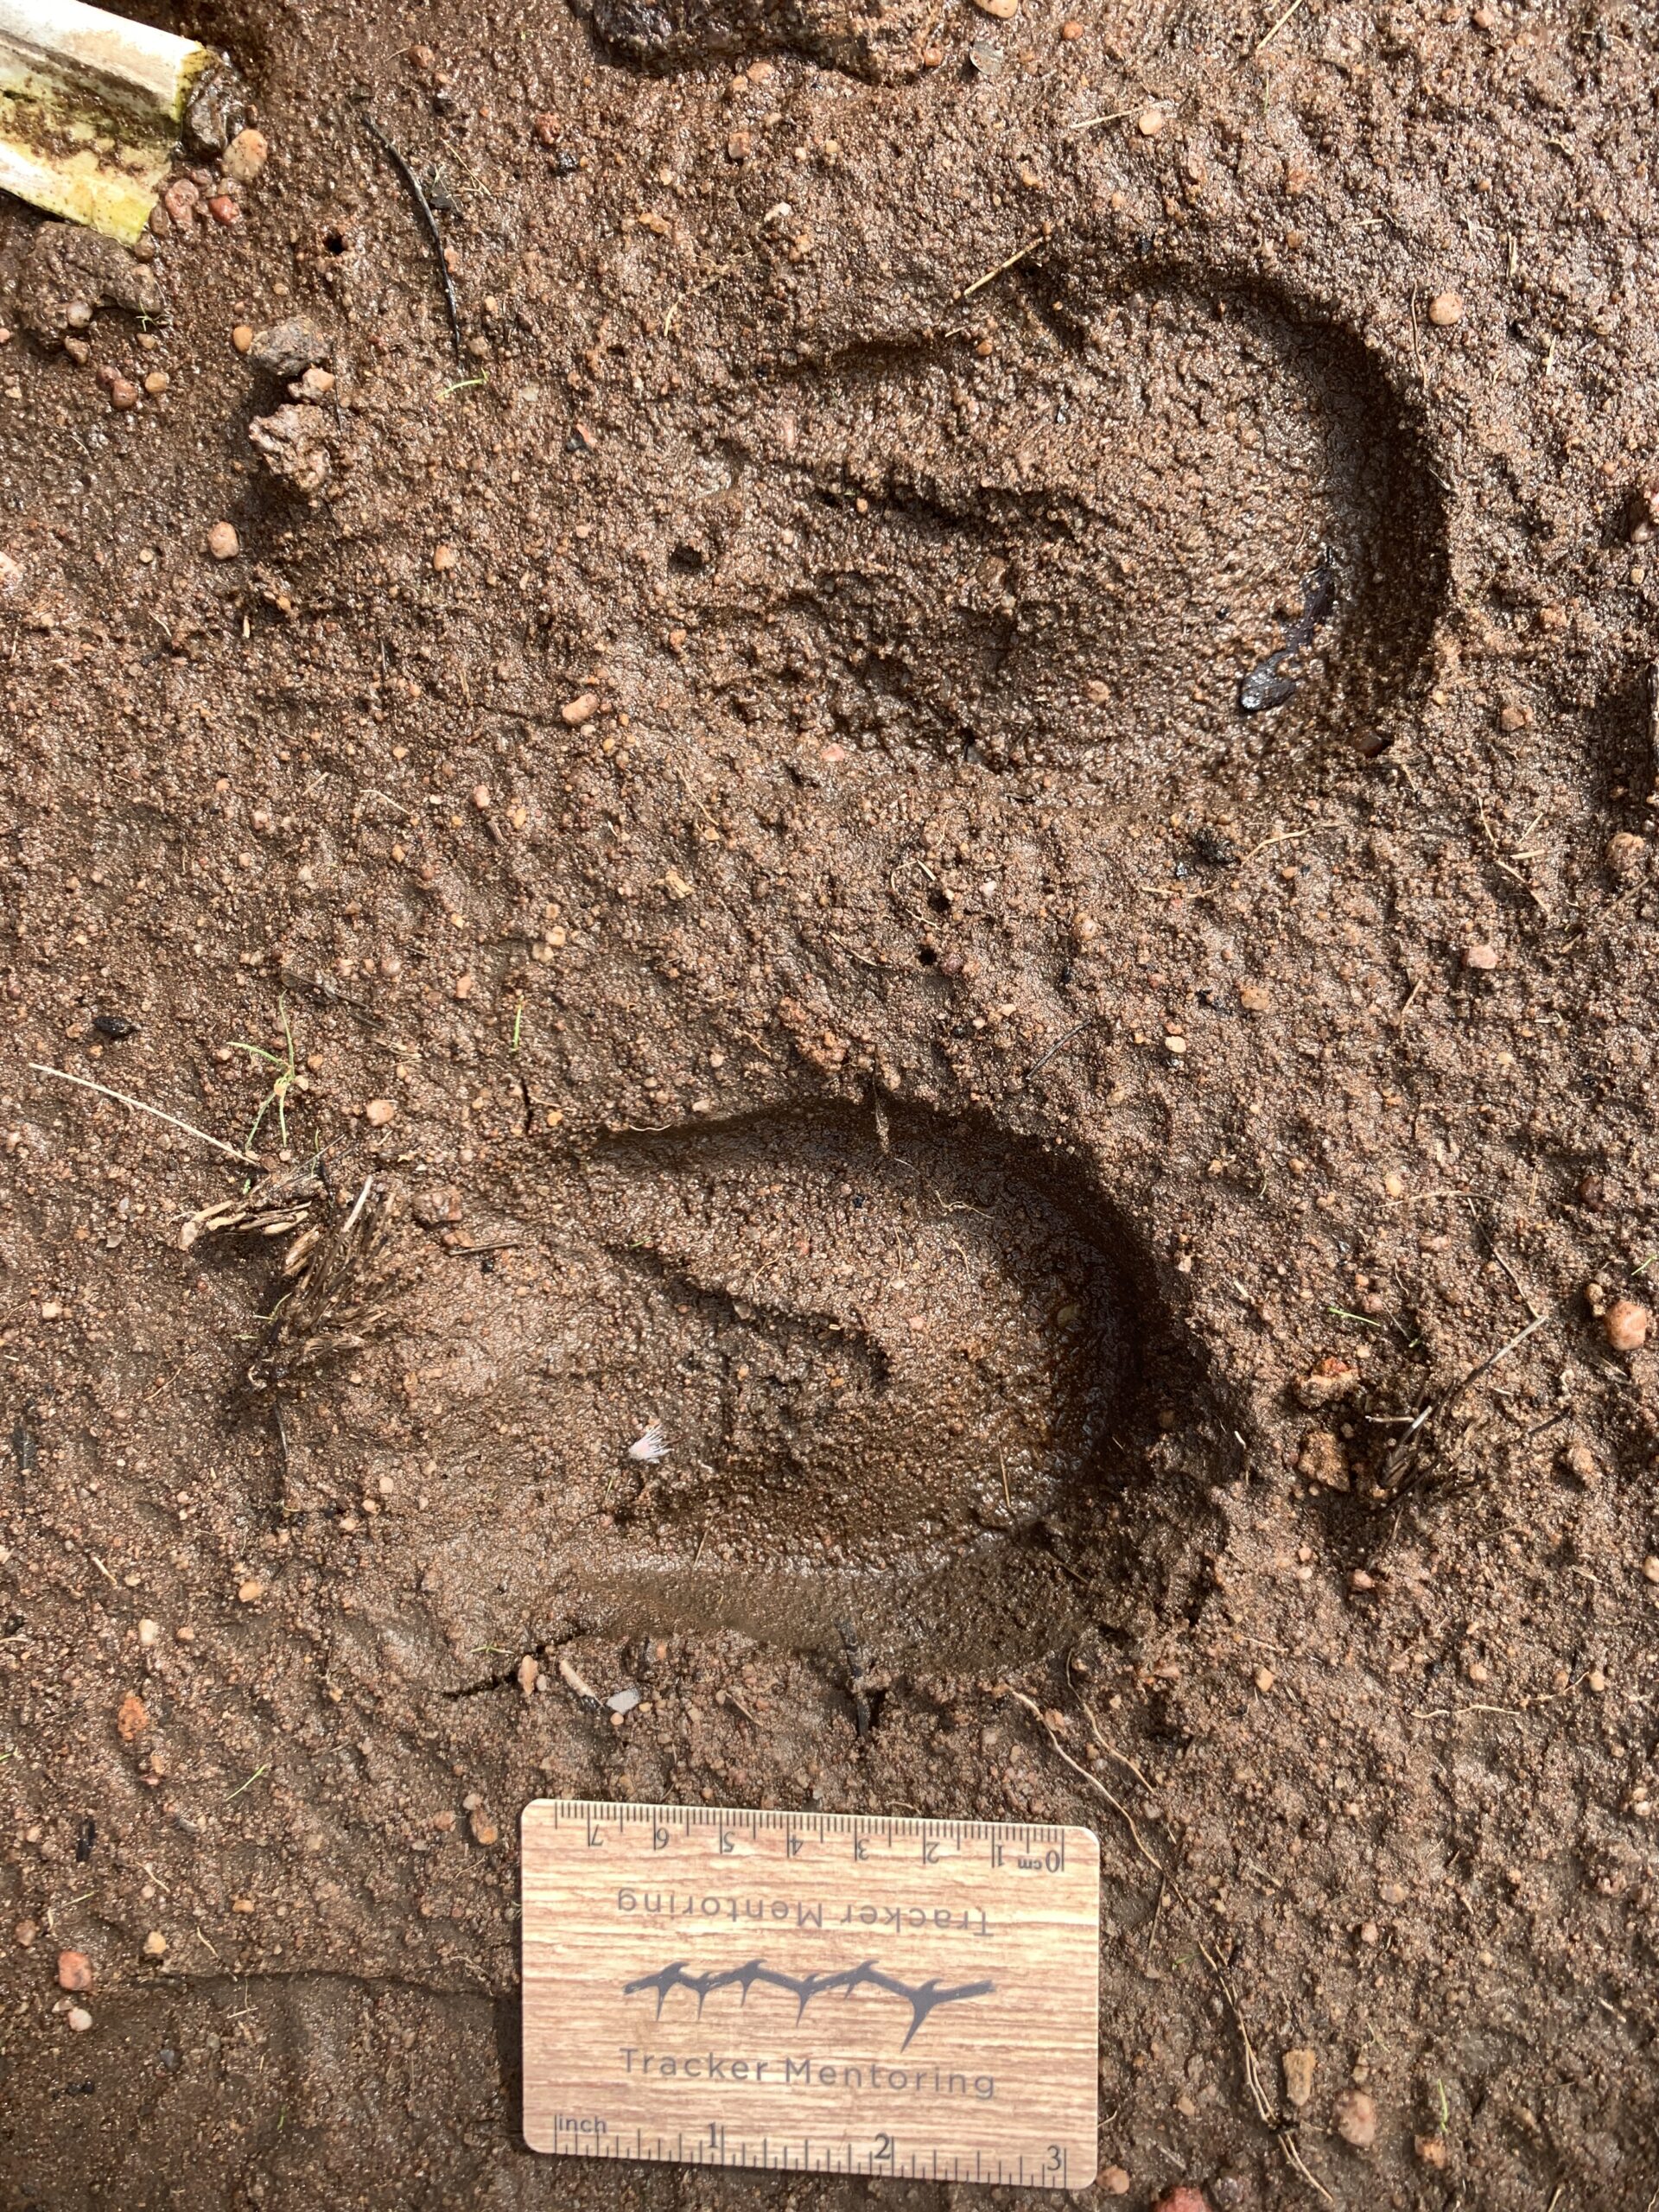 Zebra tracks, South Africa